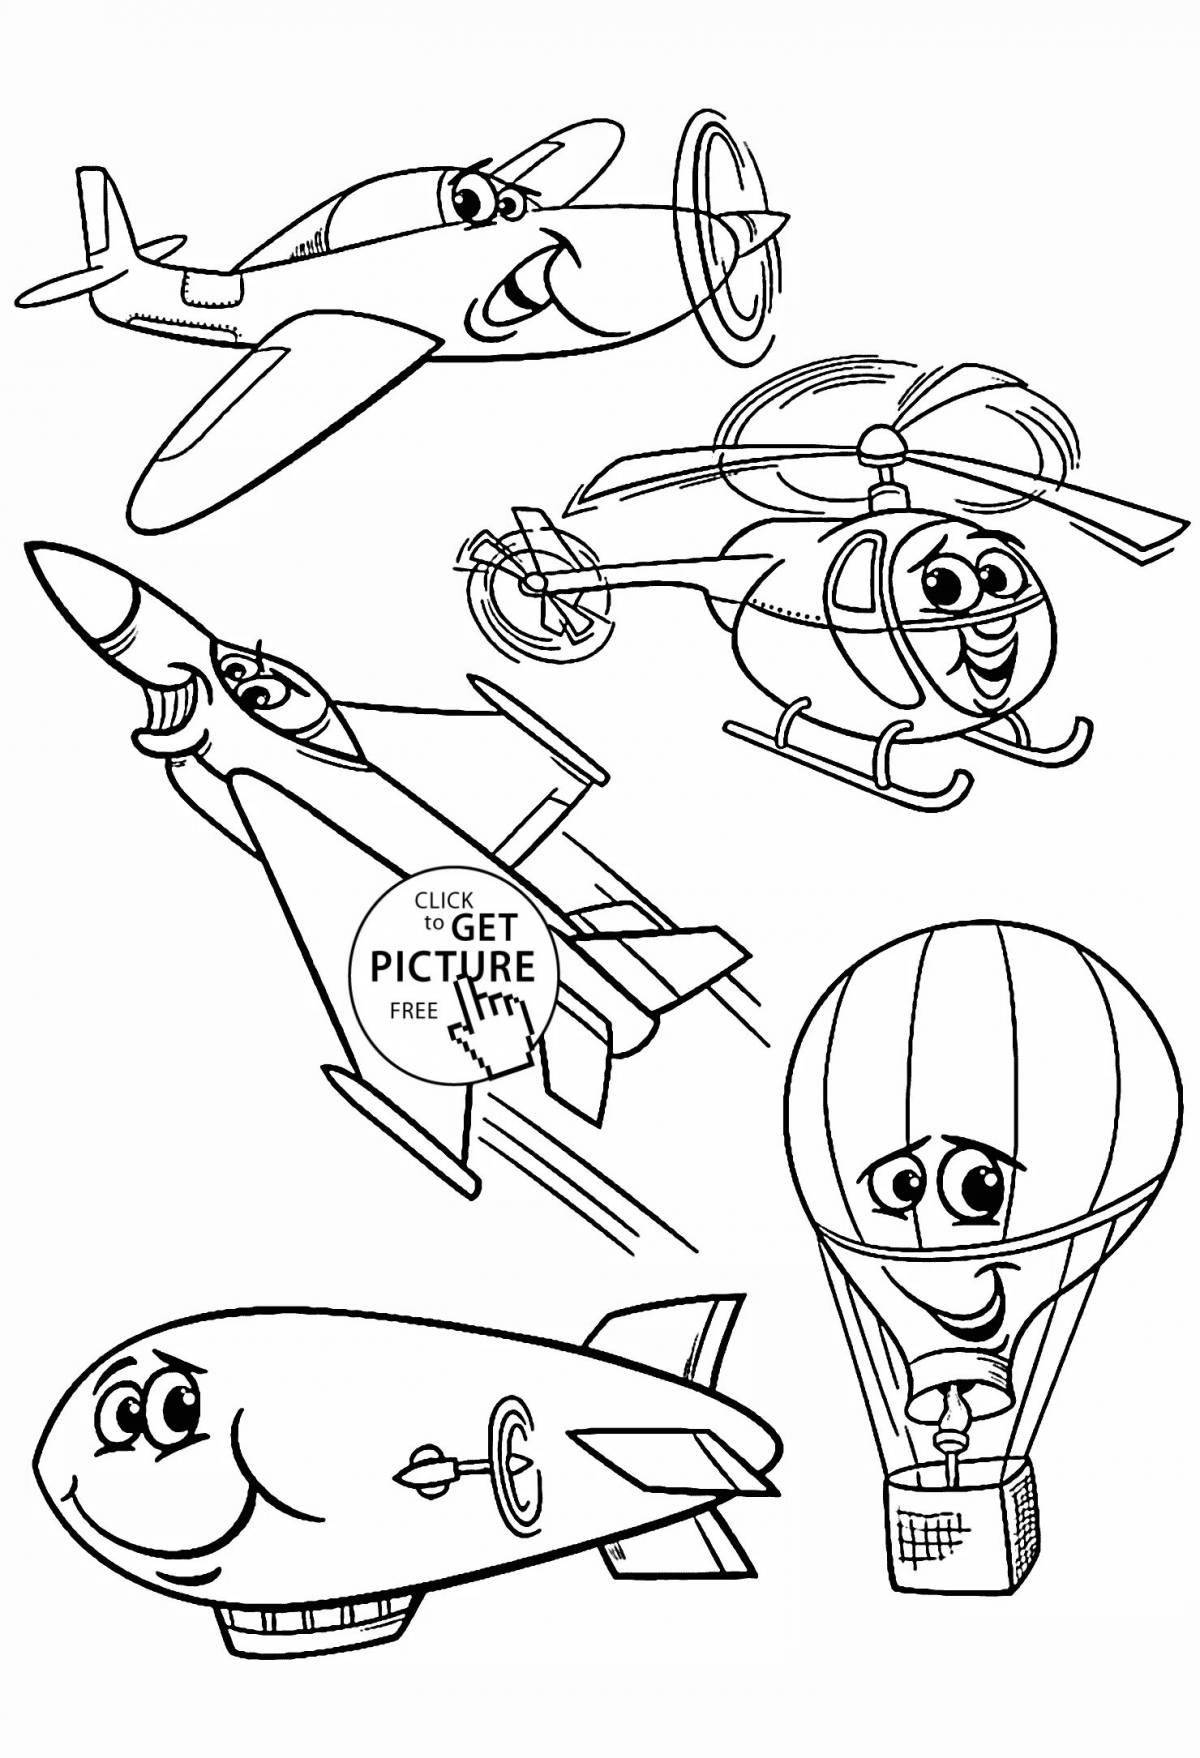 Увлекательная раскраска воздушного транспорта для детей 6-7 лет